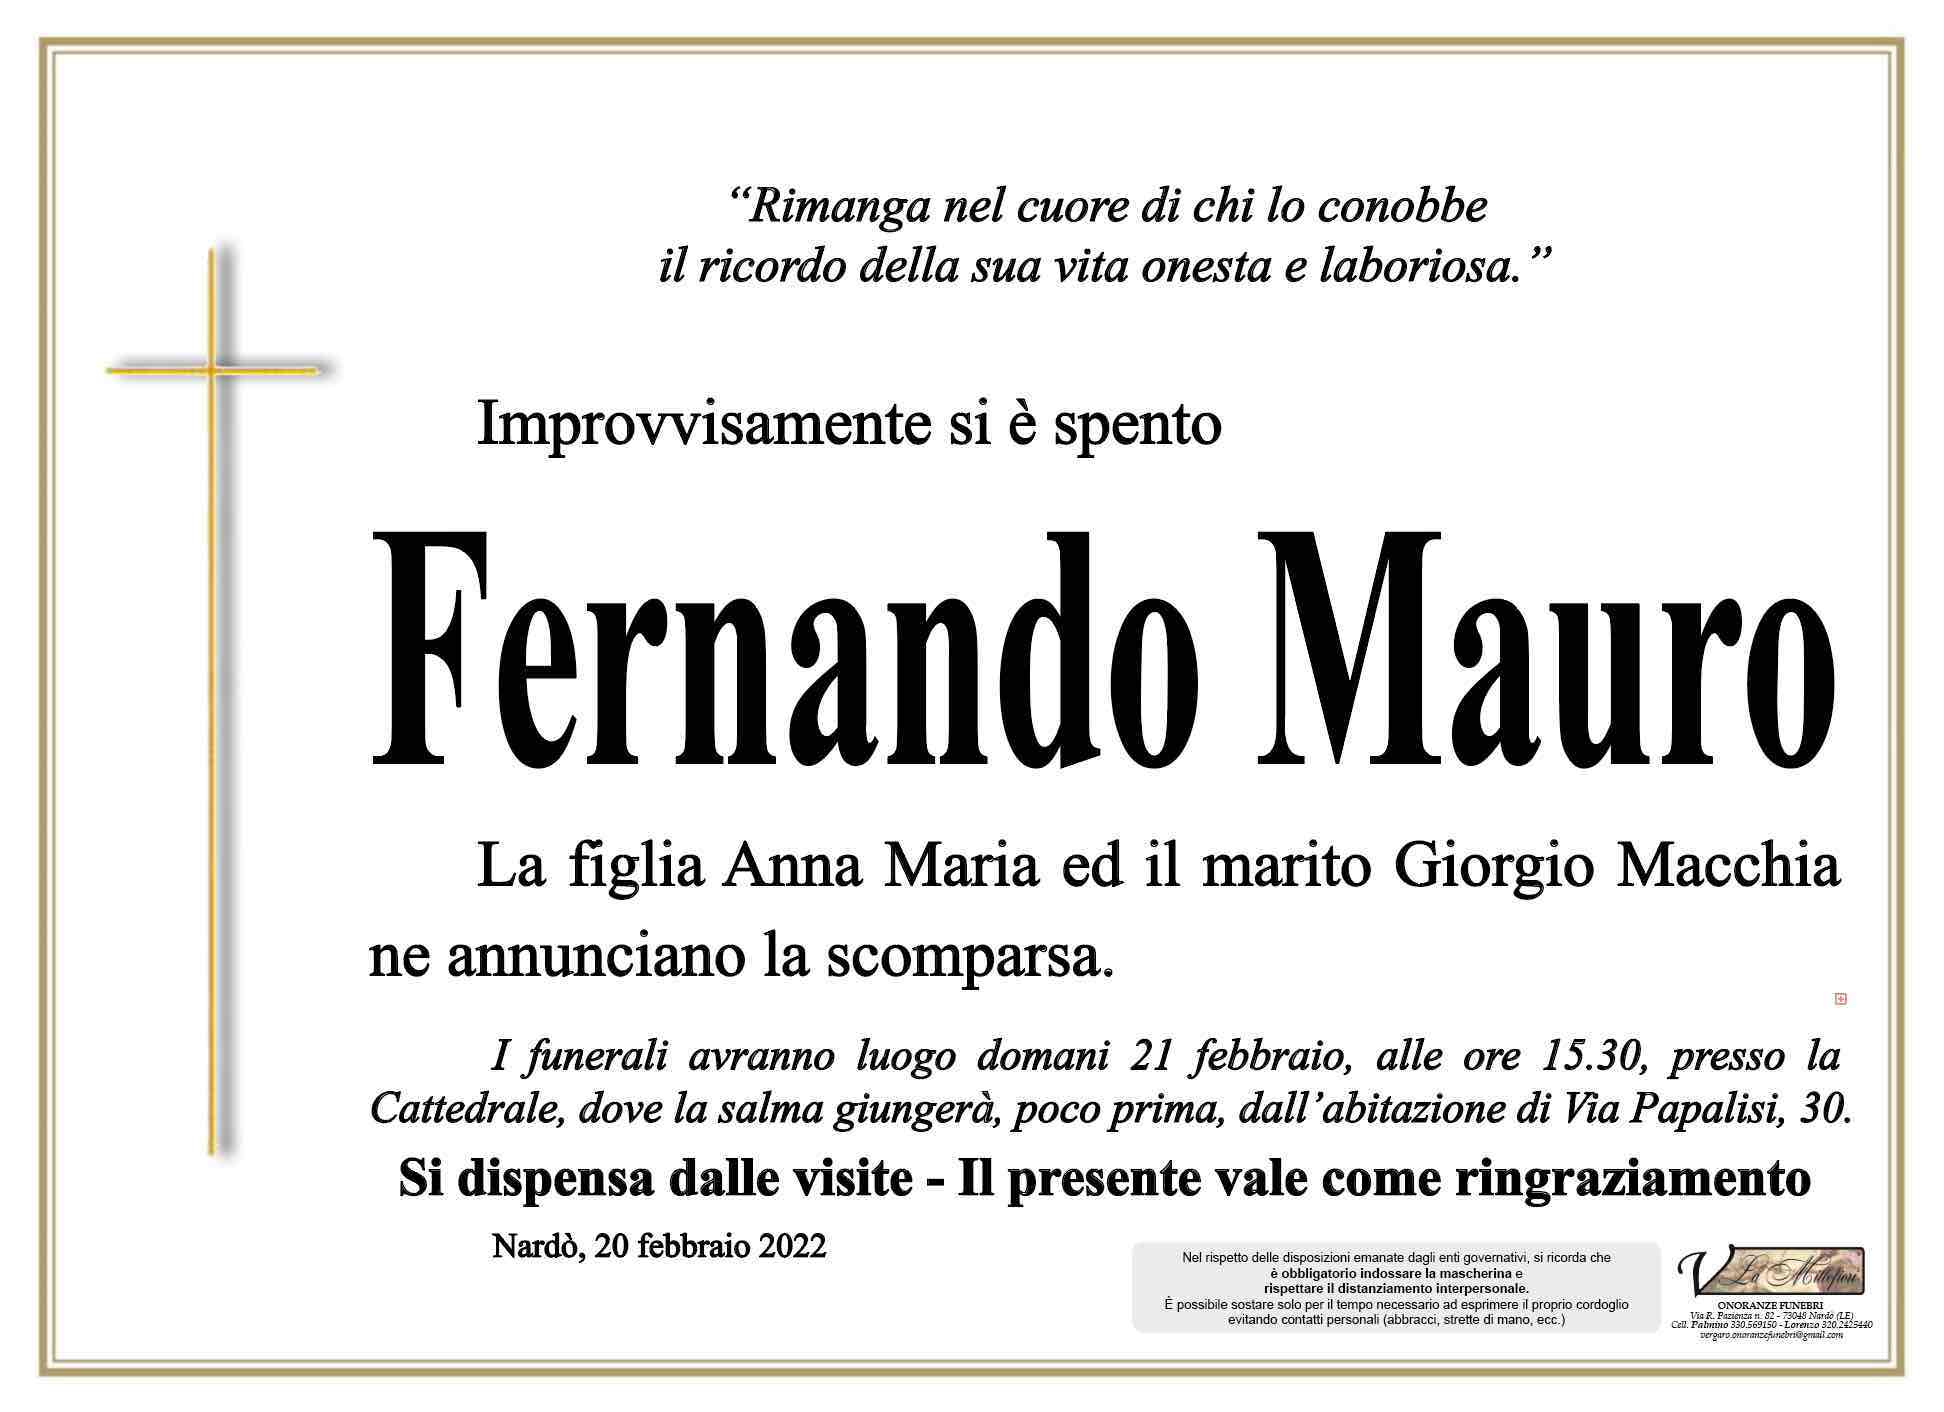 Fernando Mauro